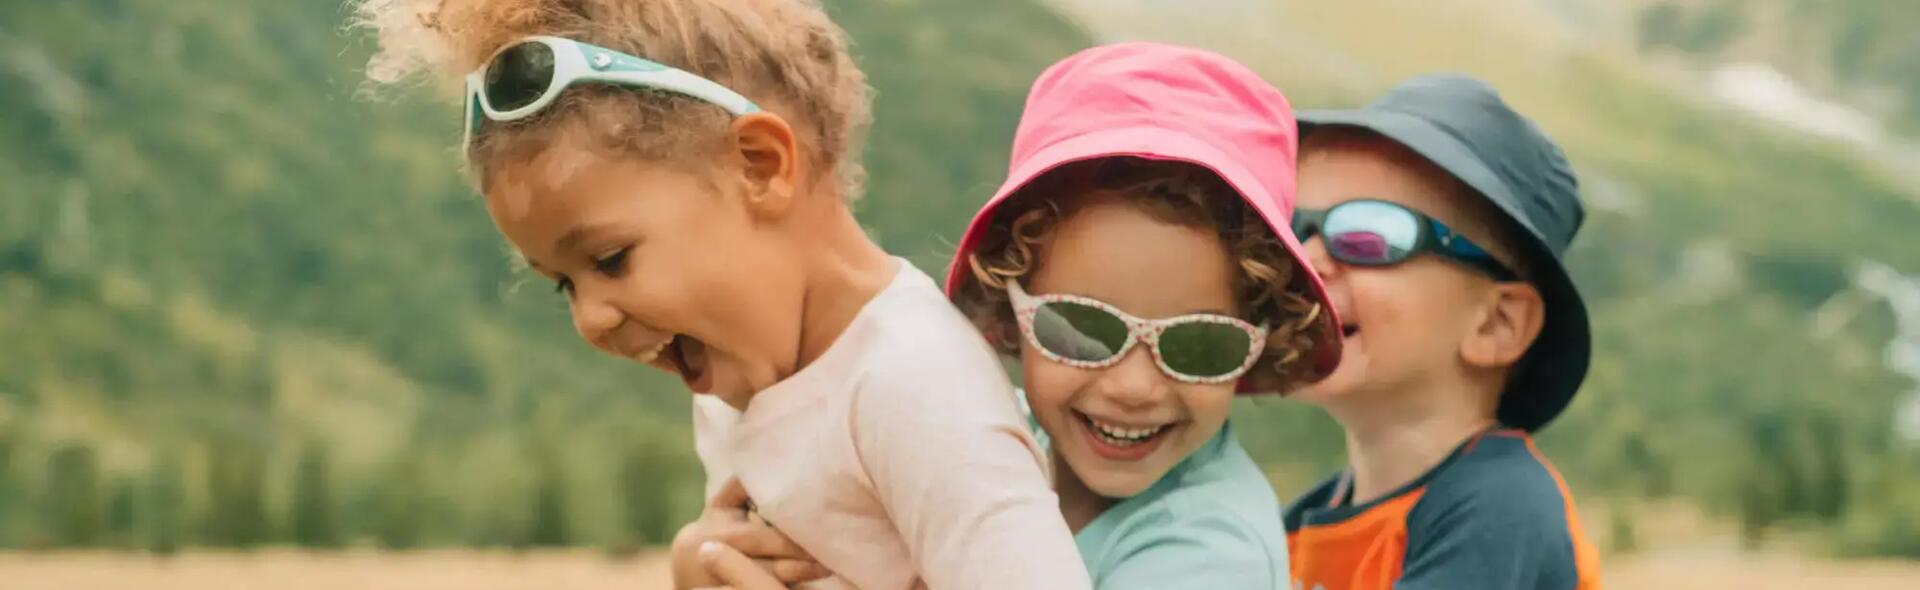 Kinder mit Sonnenbrille